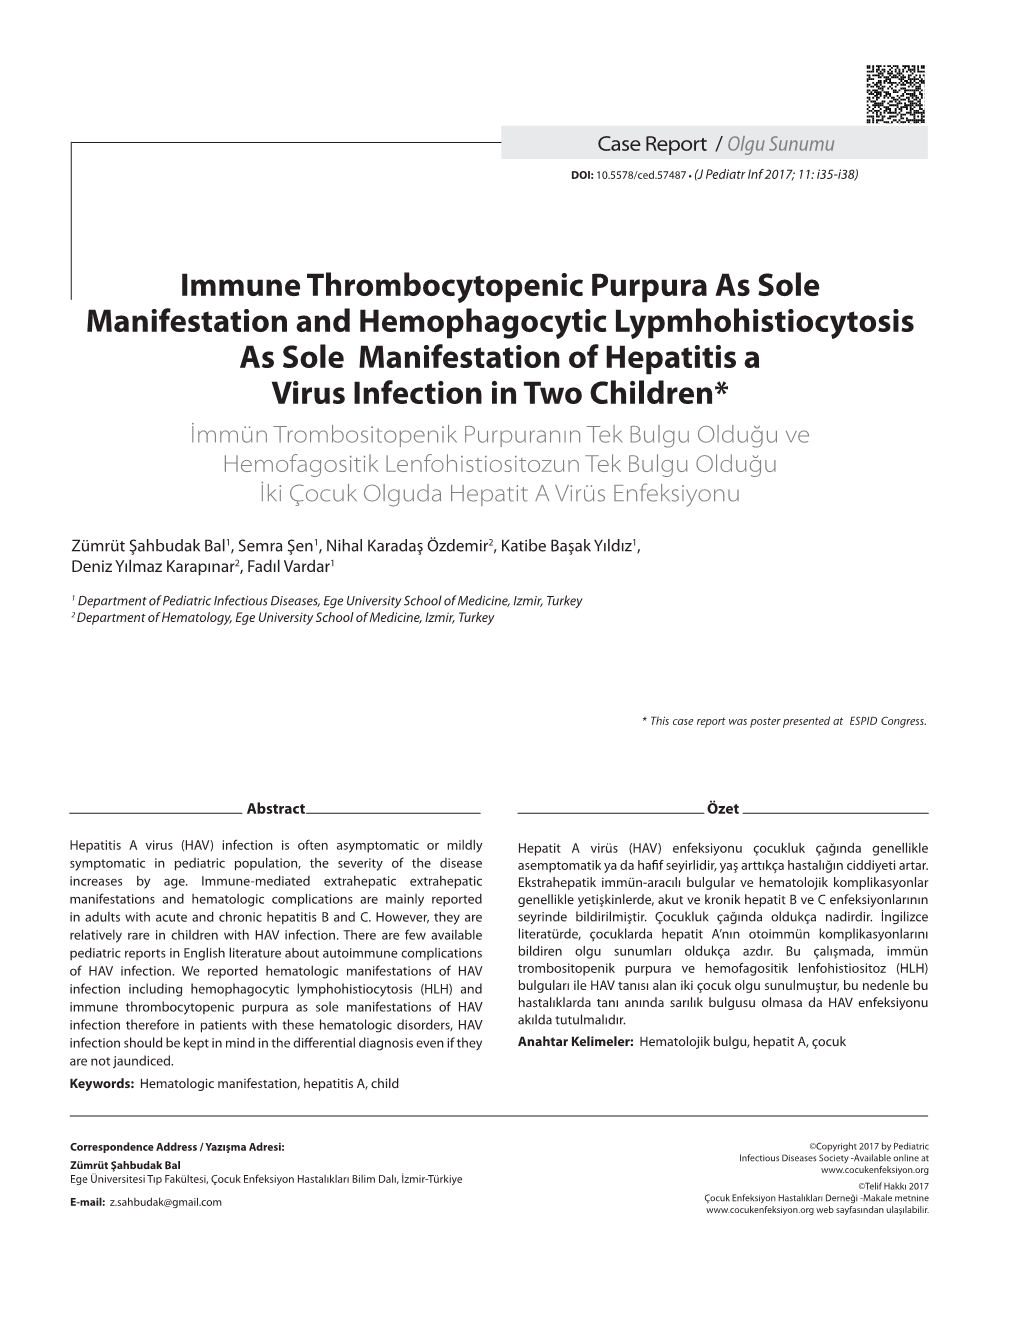 Immune Thrombocytopenic Purpura As Sole Manifestation And